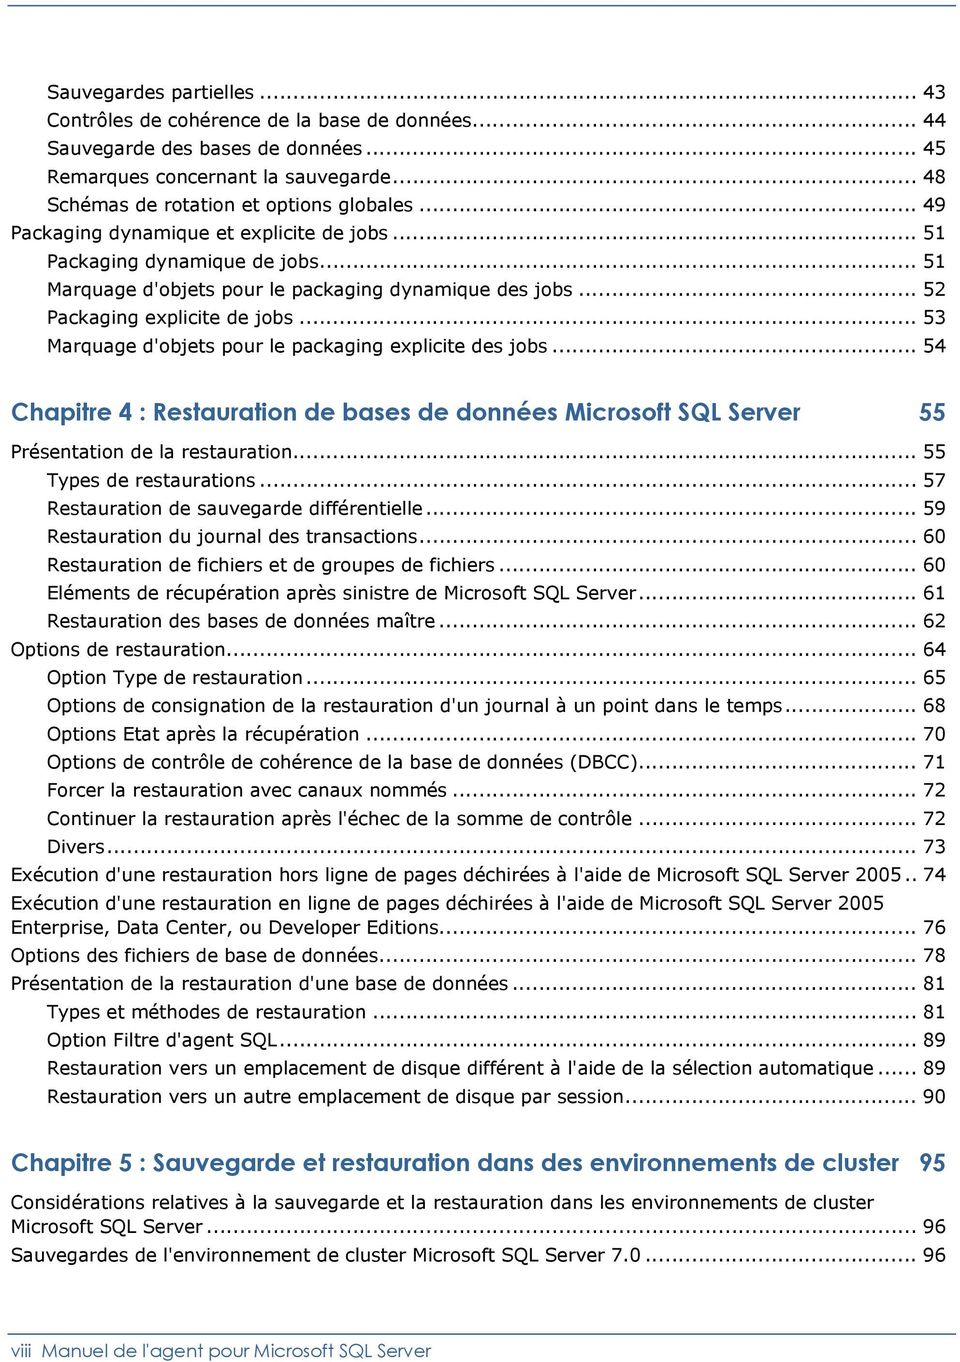 .. 53 Marquage d'objets pour le packaging explicite des jobs... 54 Chapitre 4 : Restauration de bases de données Microsoft SQL Server 55 Présentation de la restauration... 55 Types de restaurations.